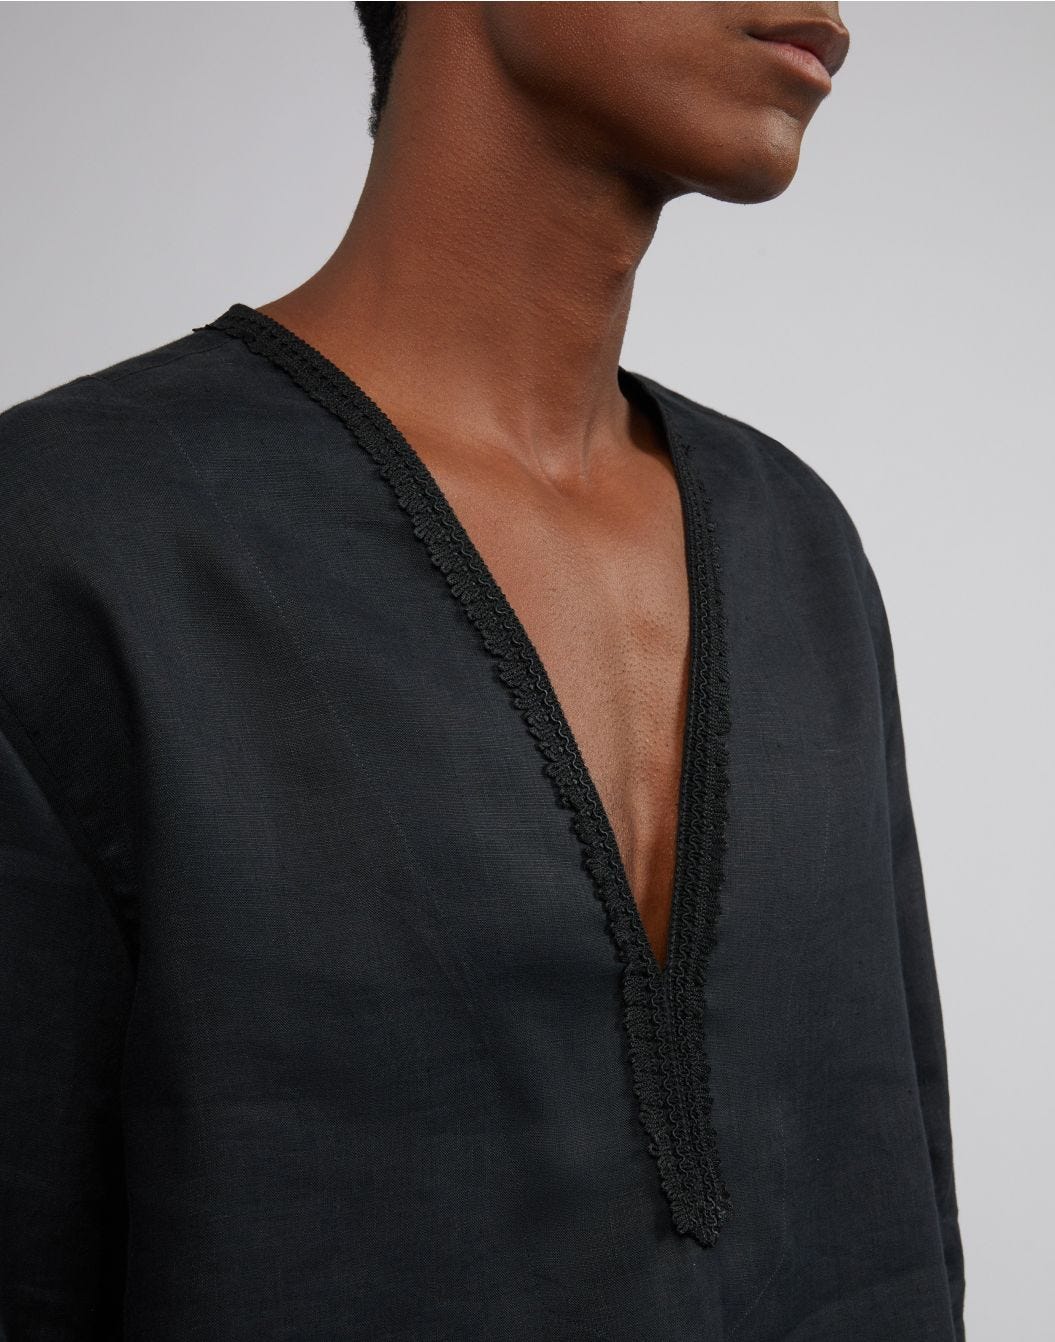 Camicia in tela di lino nera senza collo